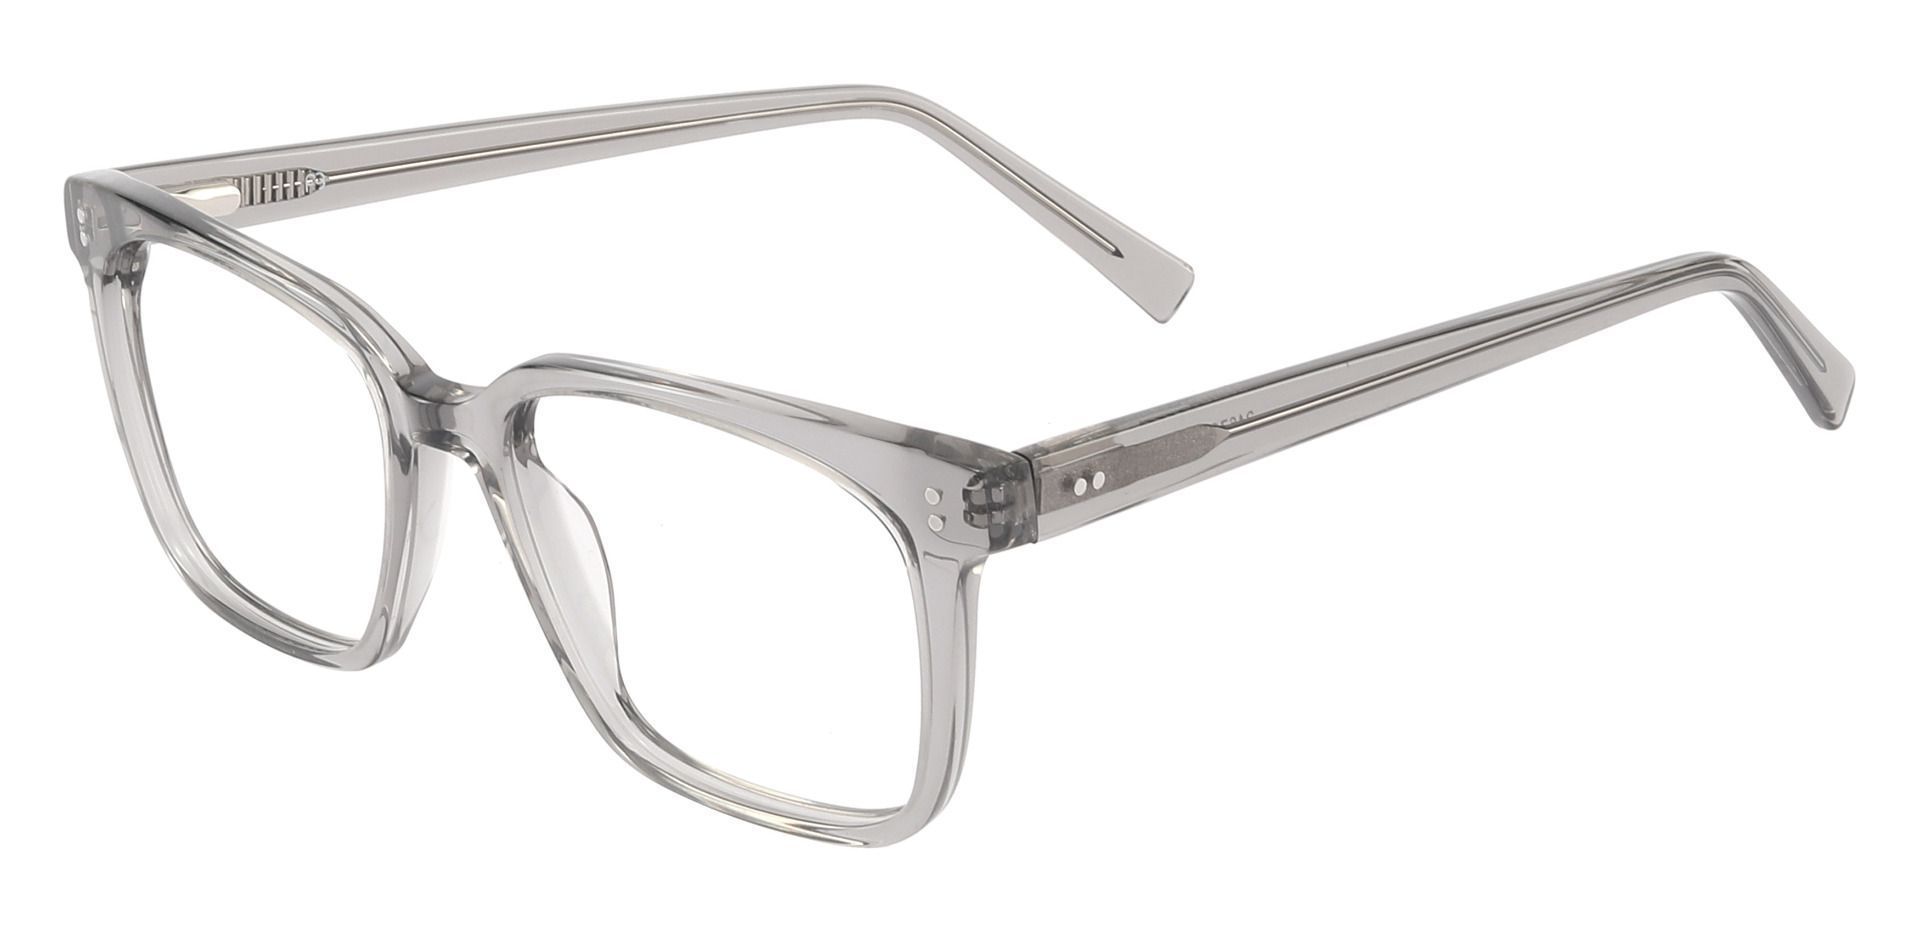 Apex Rectangle Progressive Glasses - Gray